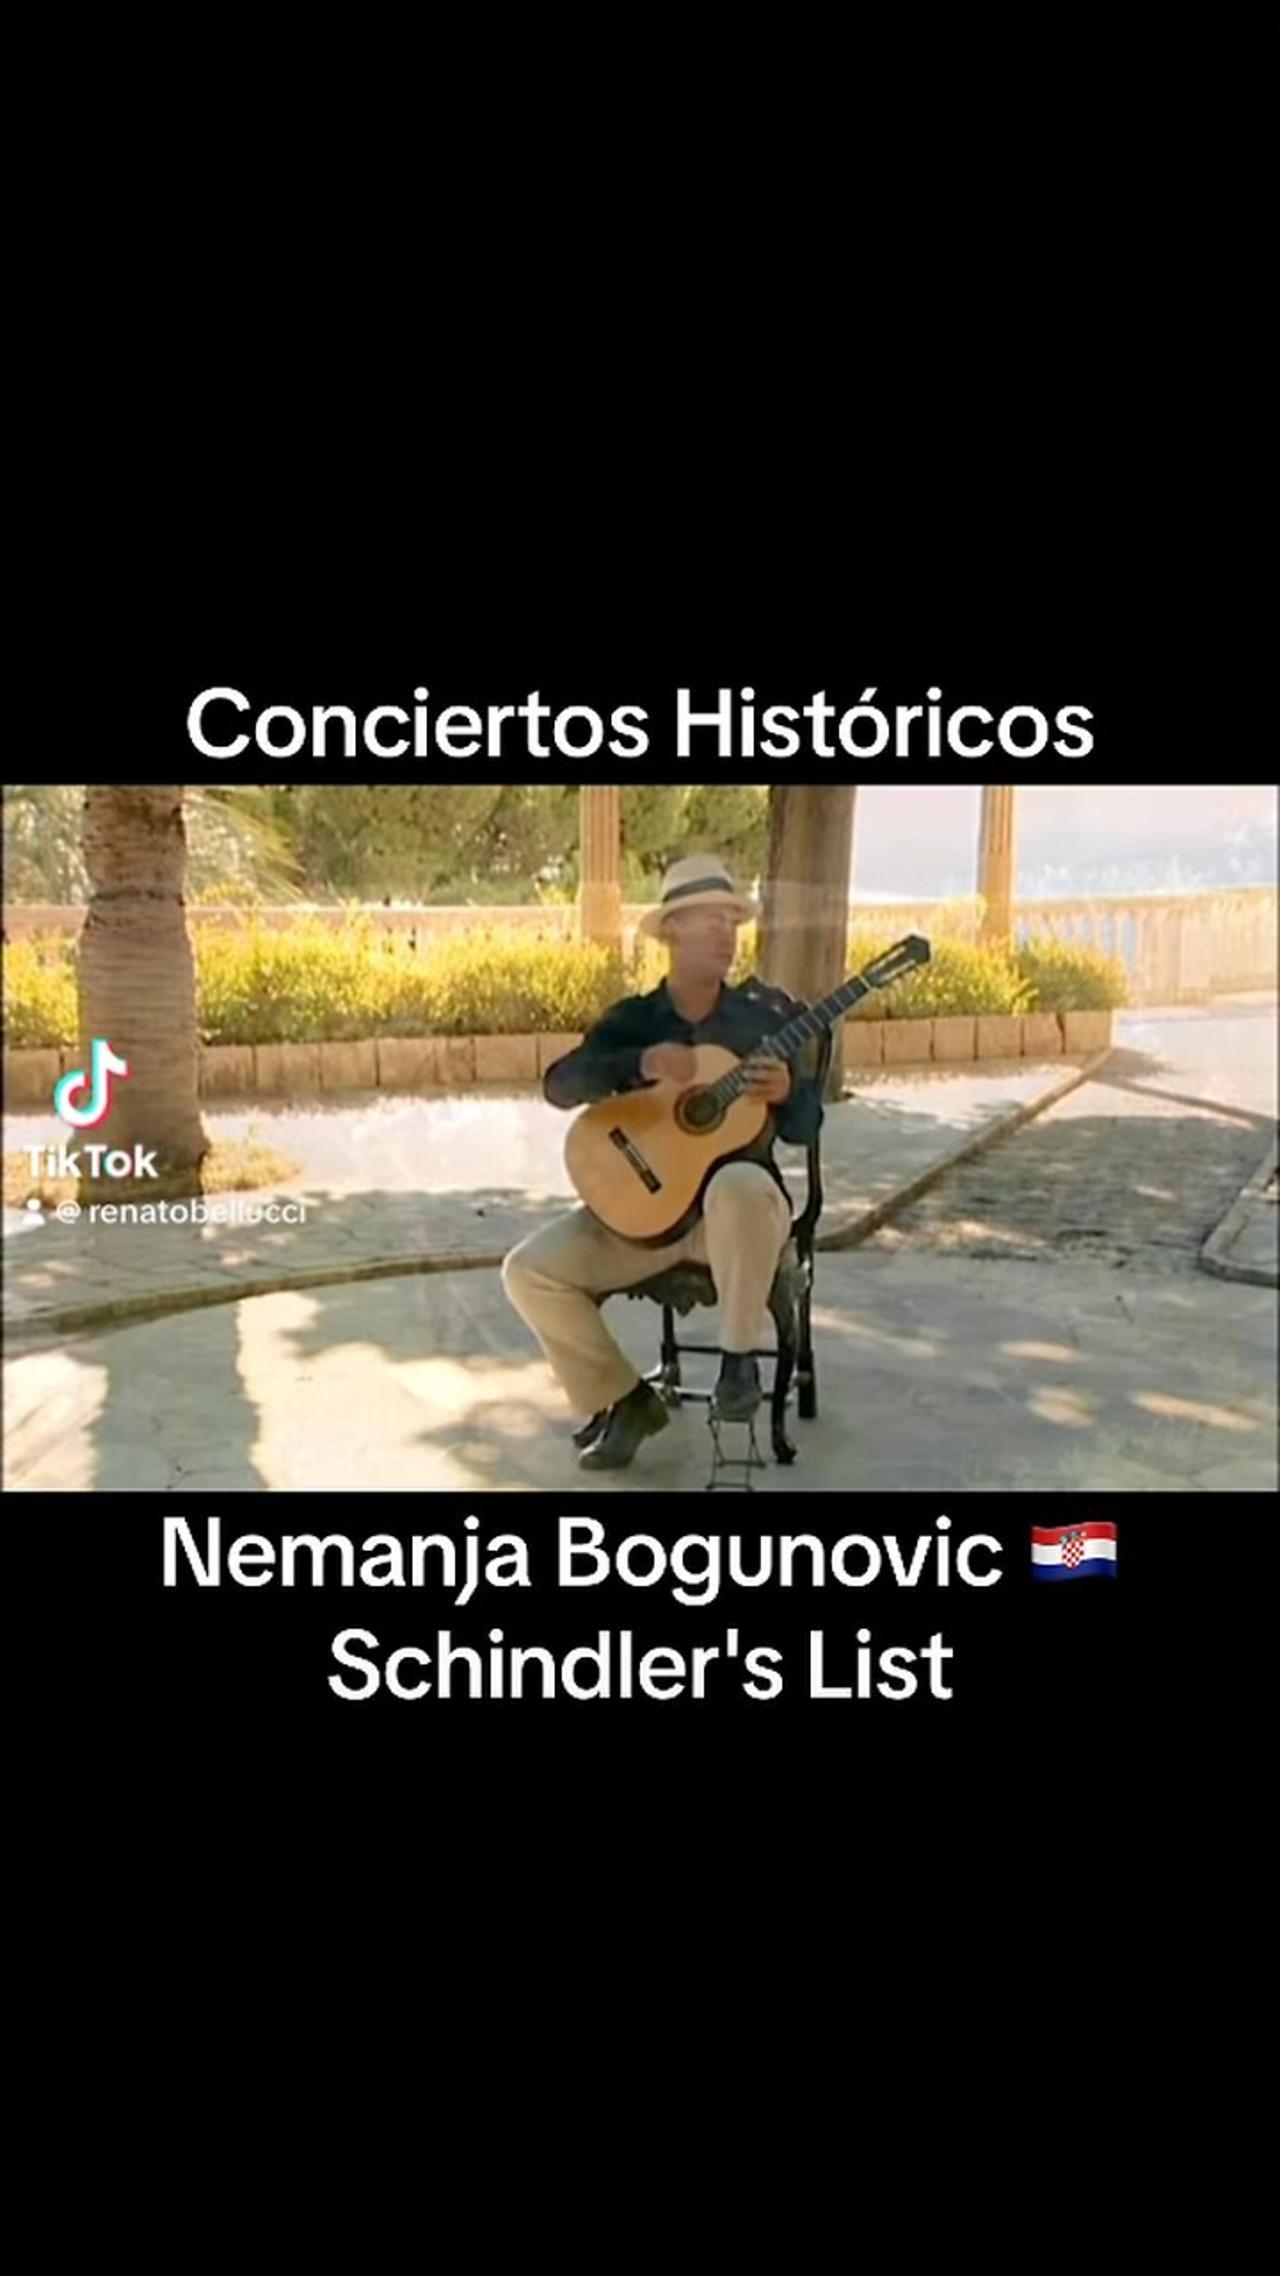 Nemanja Bogunovic 🇭🇷, Schindler's List